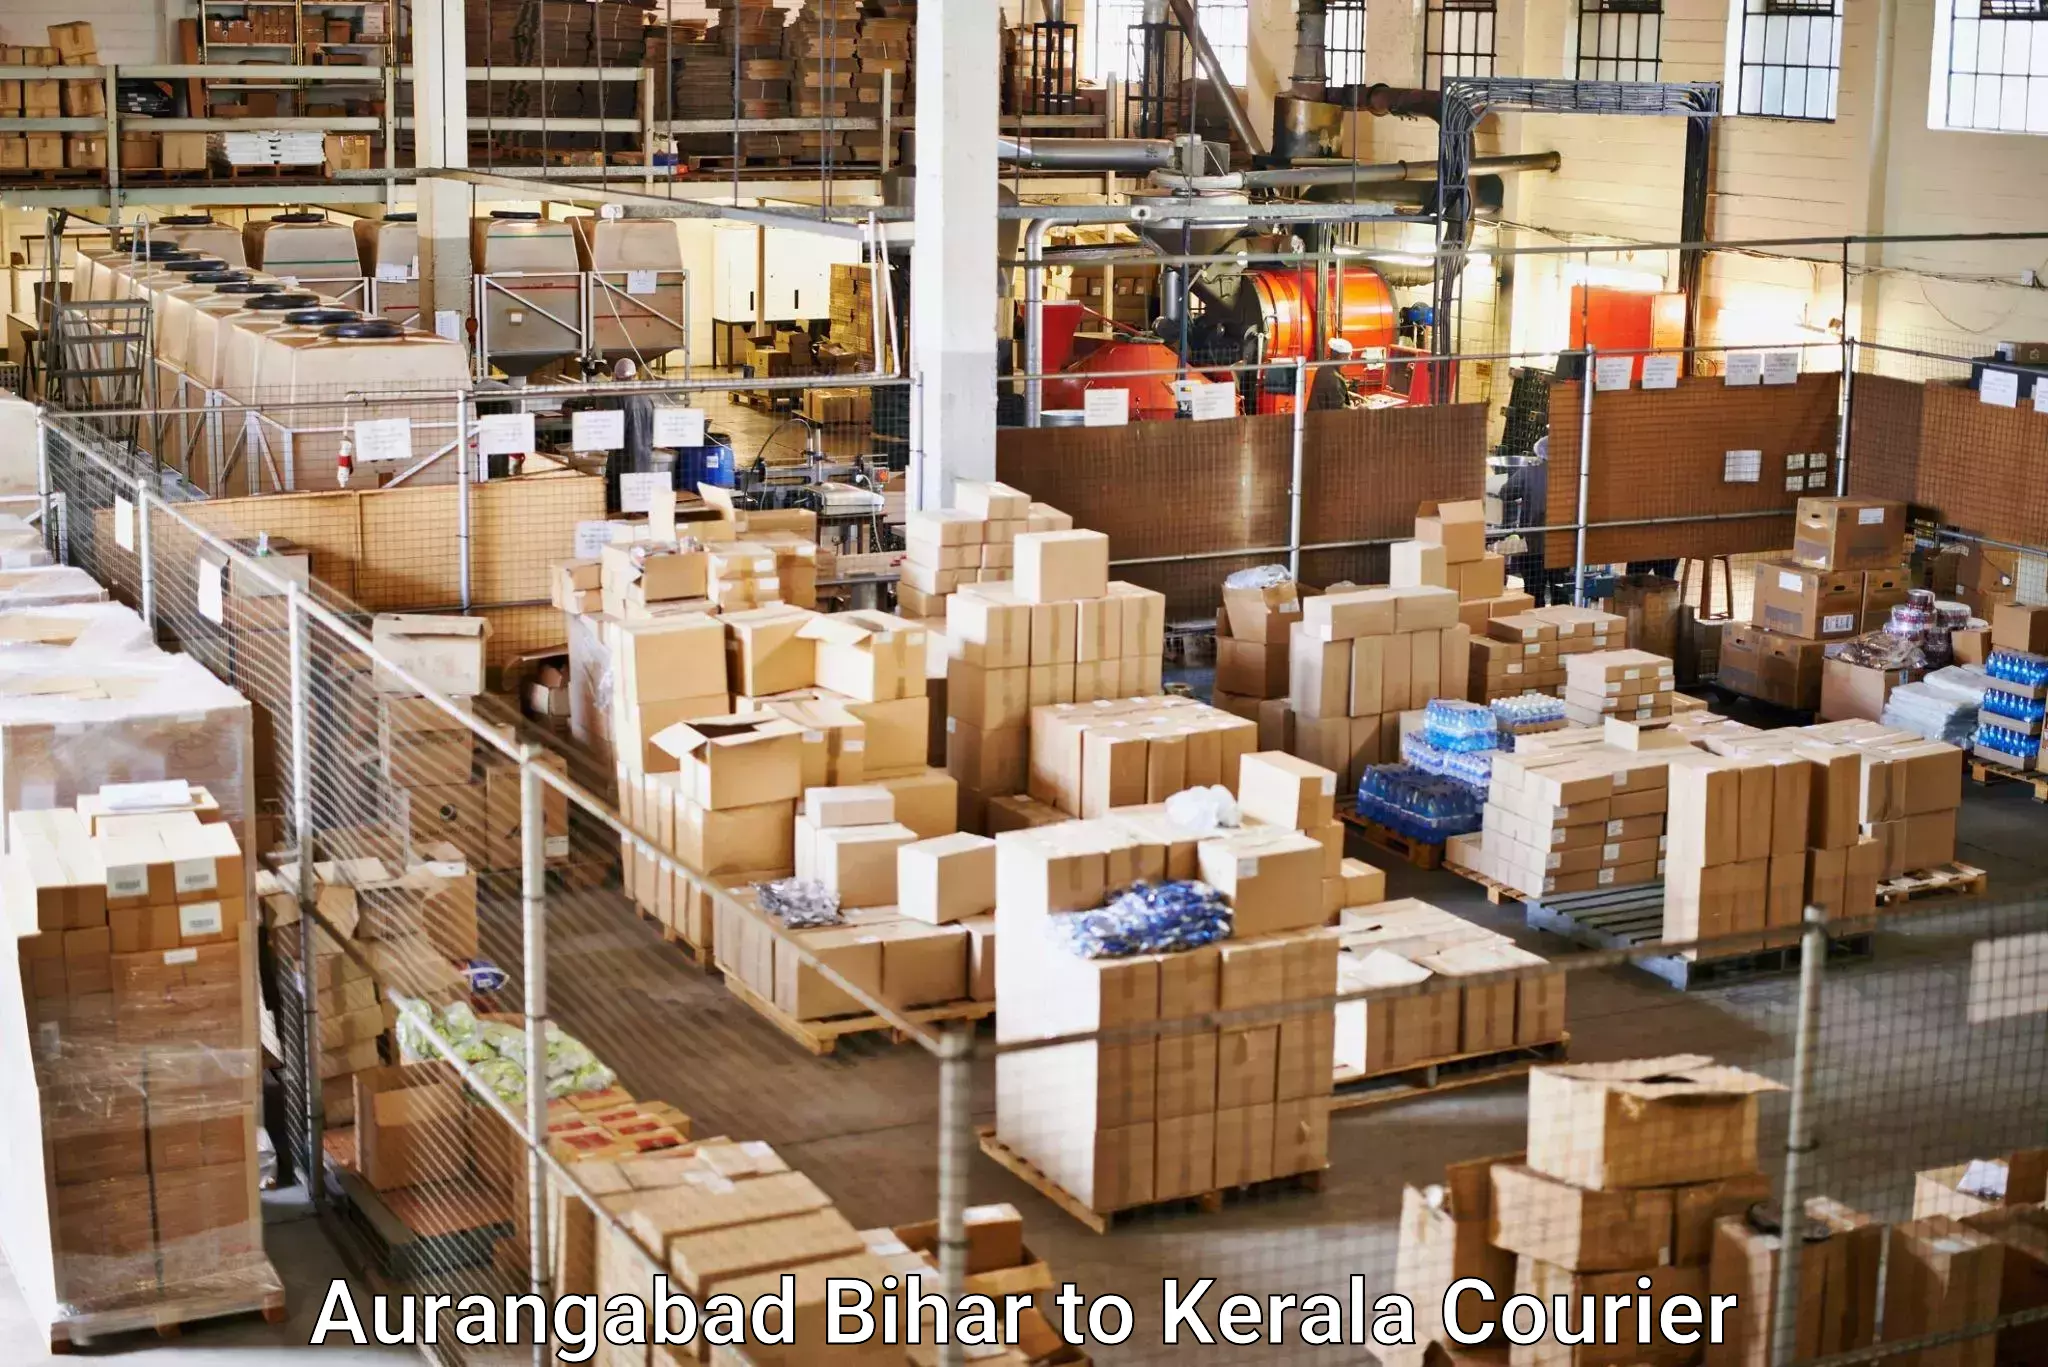 Courier service comparison Aurangabad Bihar to Allepey